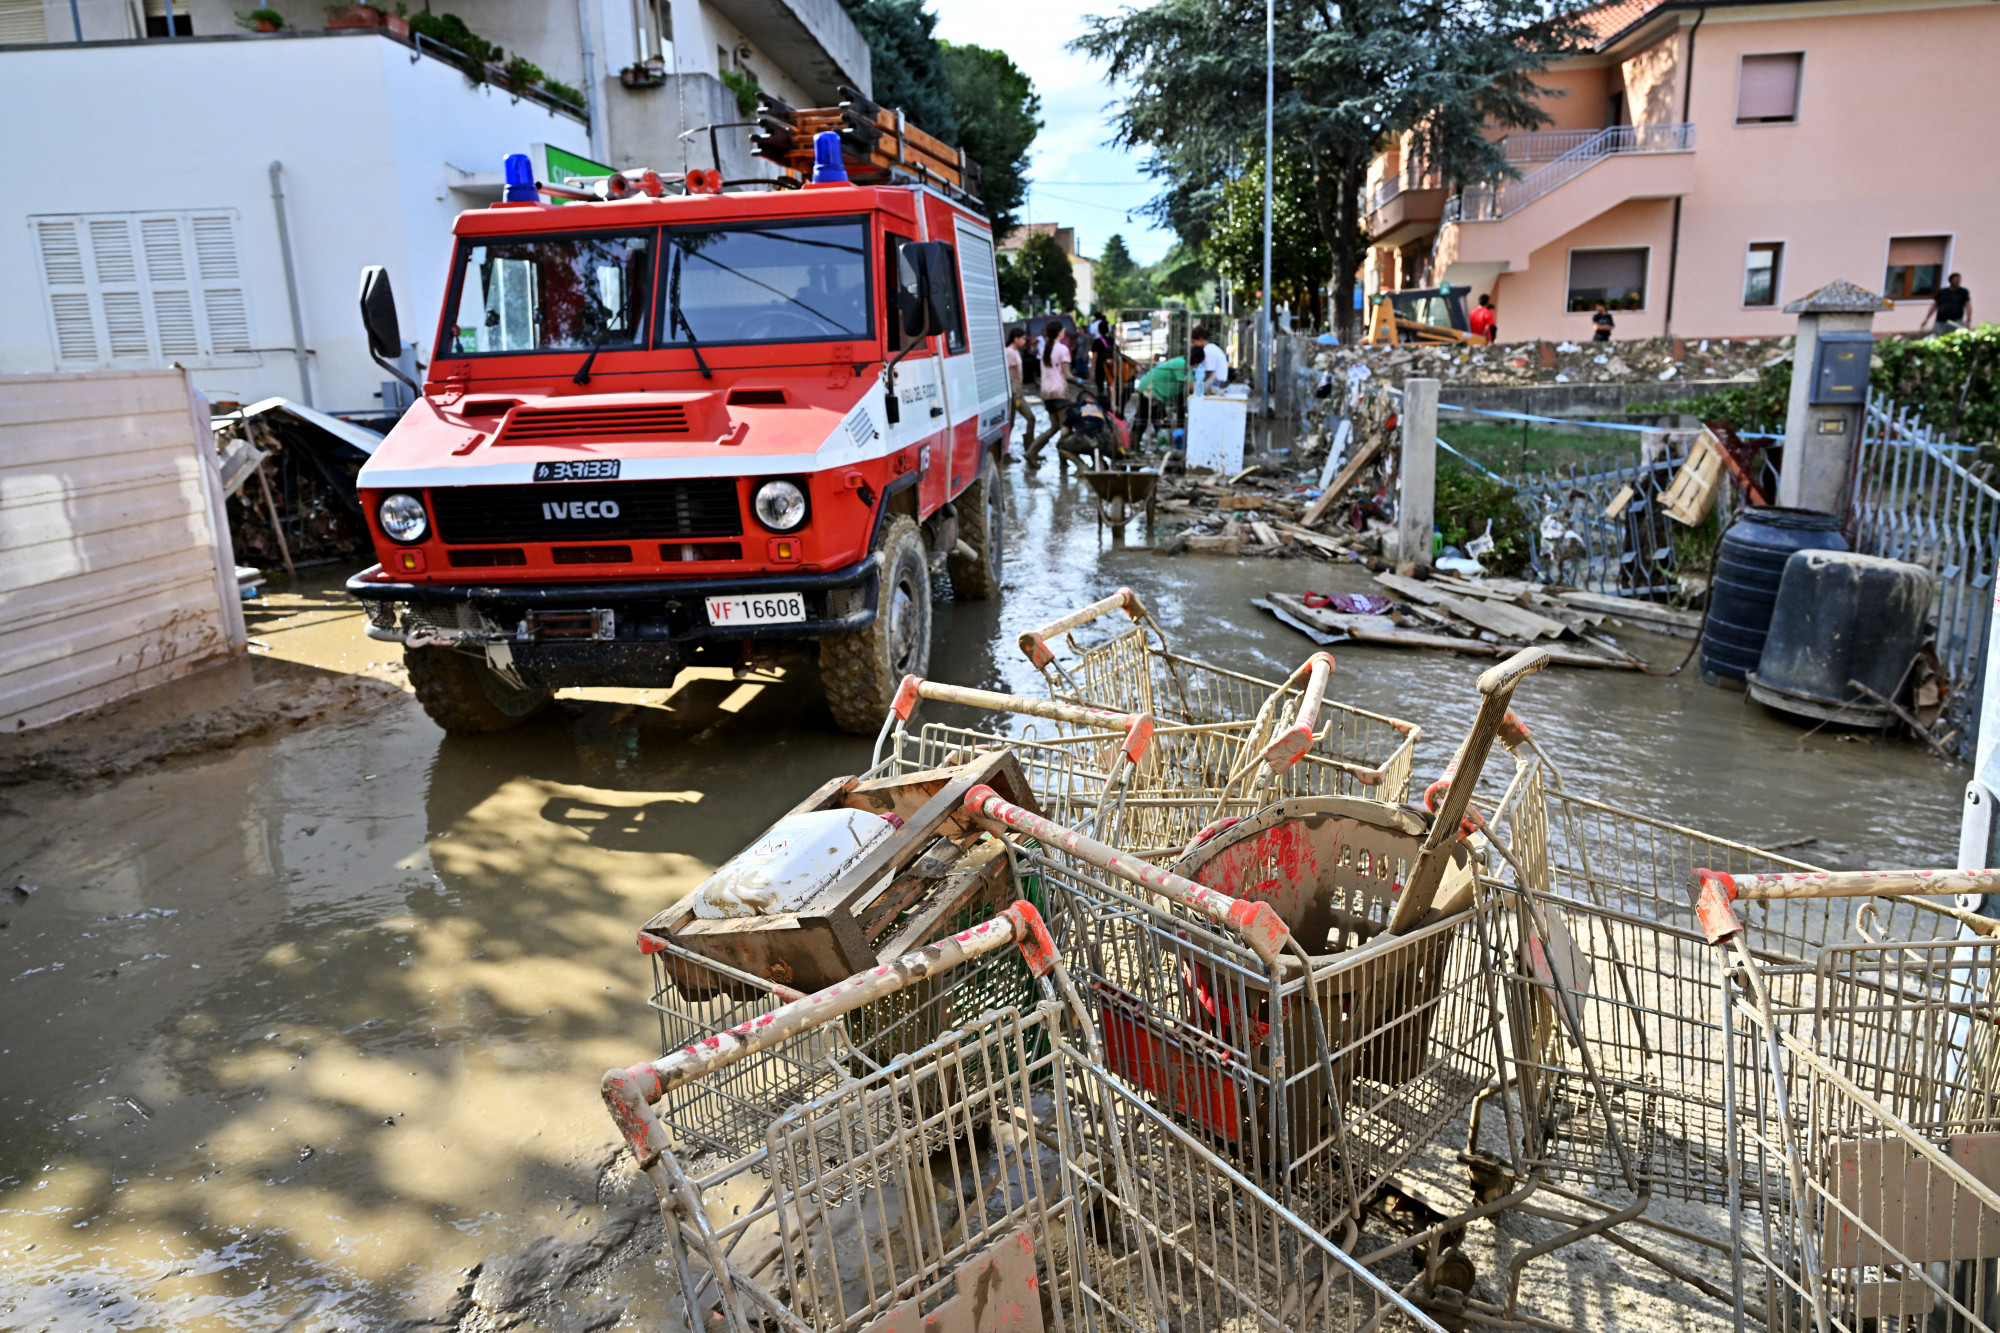 Legalább kilenc ember meghalt és négy eltűnt a heves esőzéseket követő árvízben Olaszországban